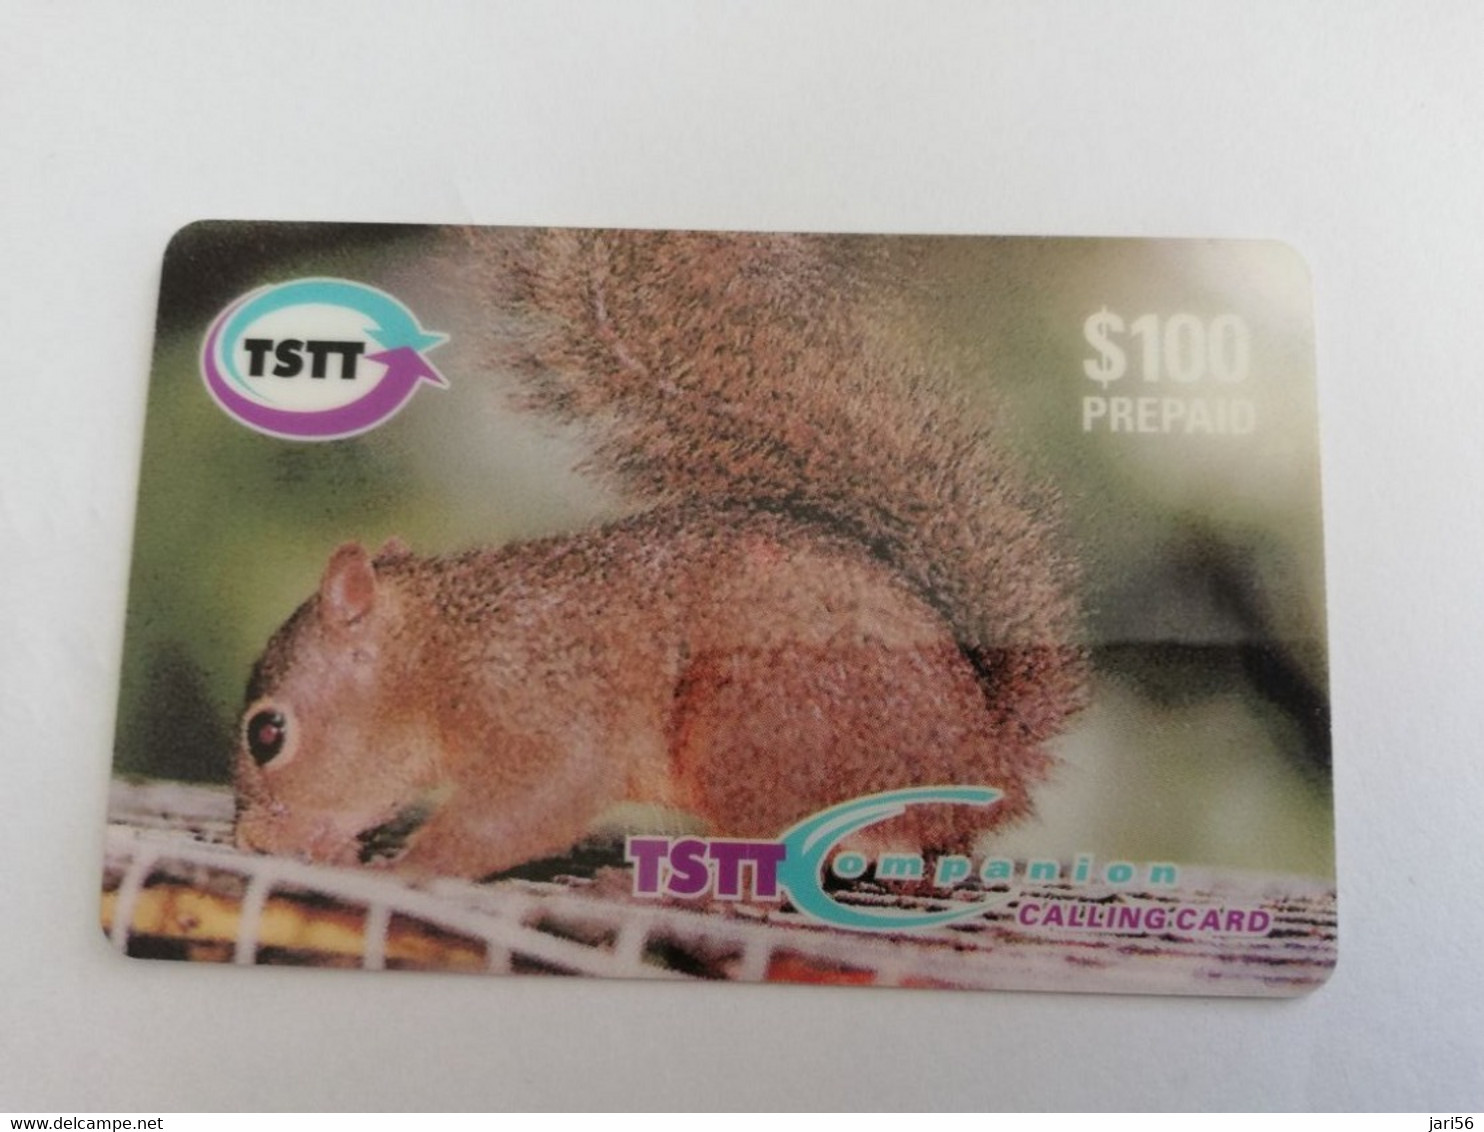 TRINIDAD & TOBAGO    $100,-  SERIESF/001 TSTT  HUNGRY LITTLE SQUIRREL    ** 9552** - Trinité & Tobago